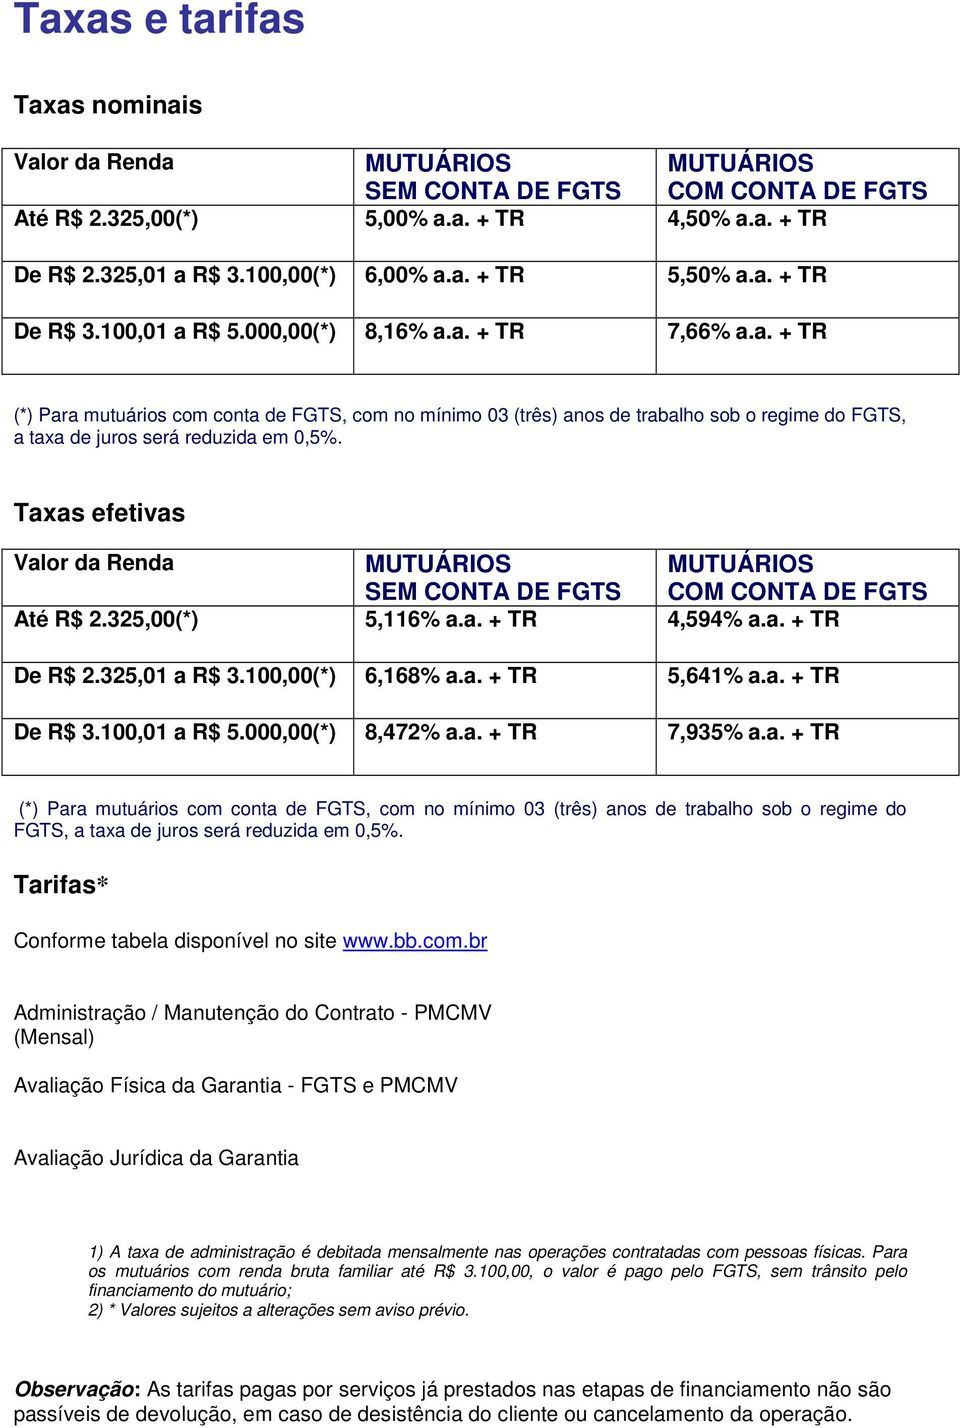 Taxas efetivas Valor da Renda MUTUÁRIOS MUTUÁRIOS SEM CONTA DE FGTS COM CONTA DE FGTS Até R$ 2.325,00(*) 5,116% a.a. + TR 4,594% a.a. + TR De R$ 2.325,01 a R$ 3.100,00(*) 6,168% a.a. + TR 5,641% a.a. + TR De R$ 3.